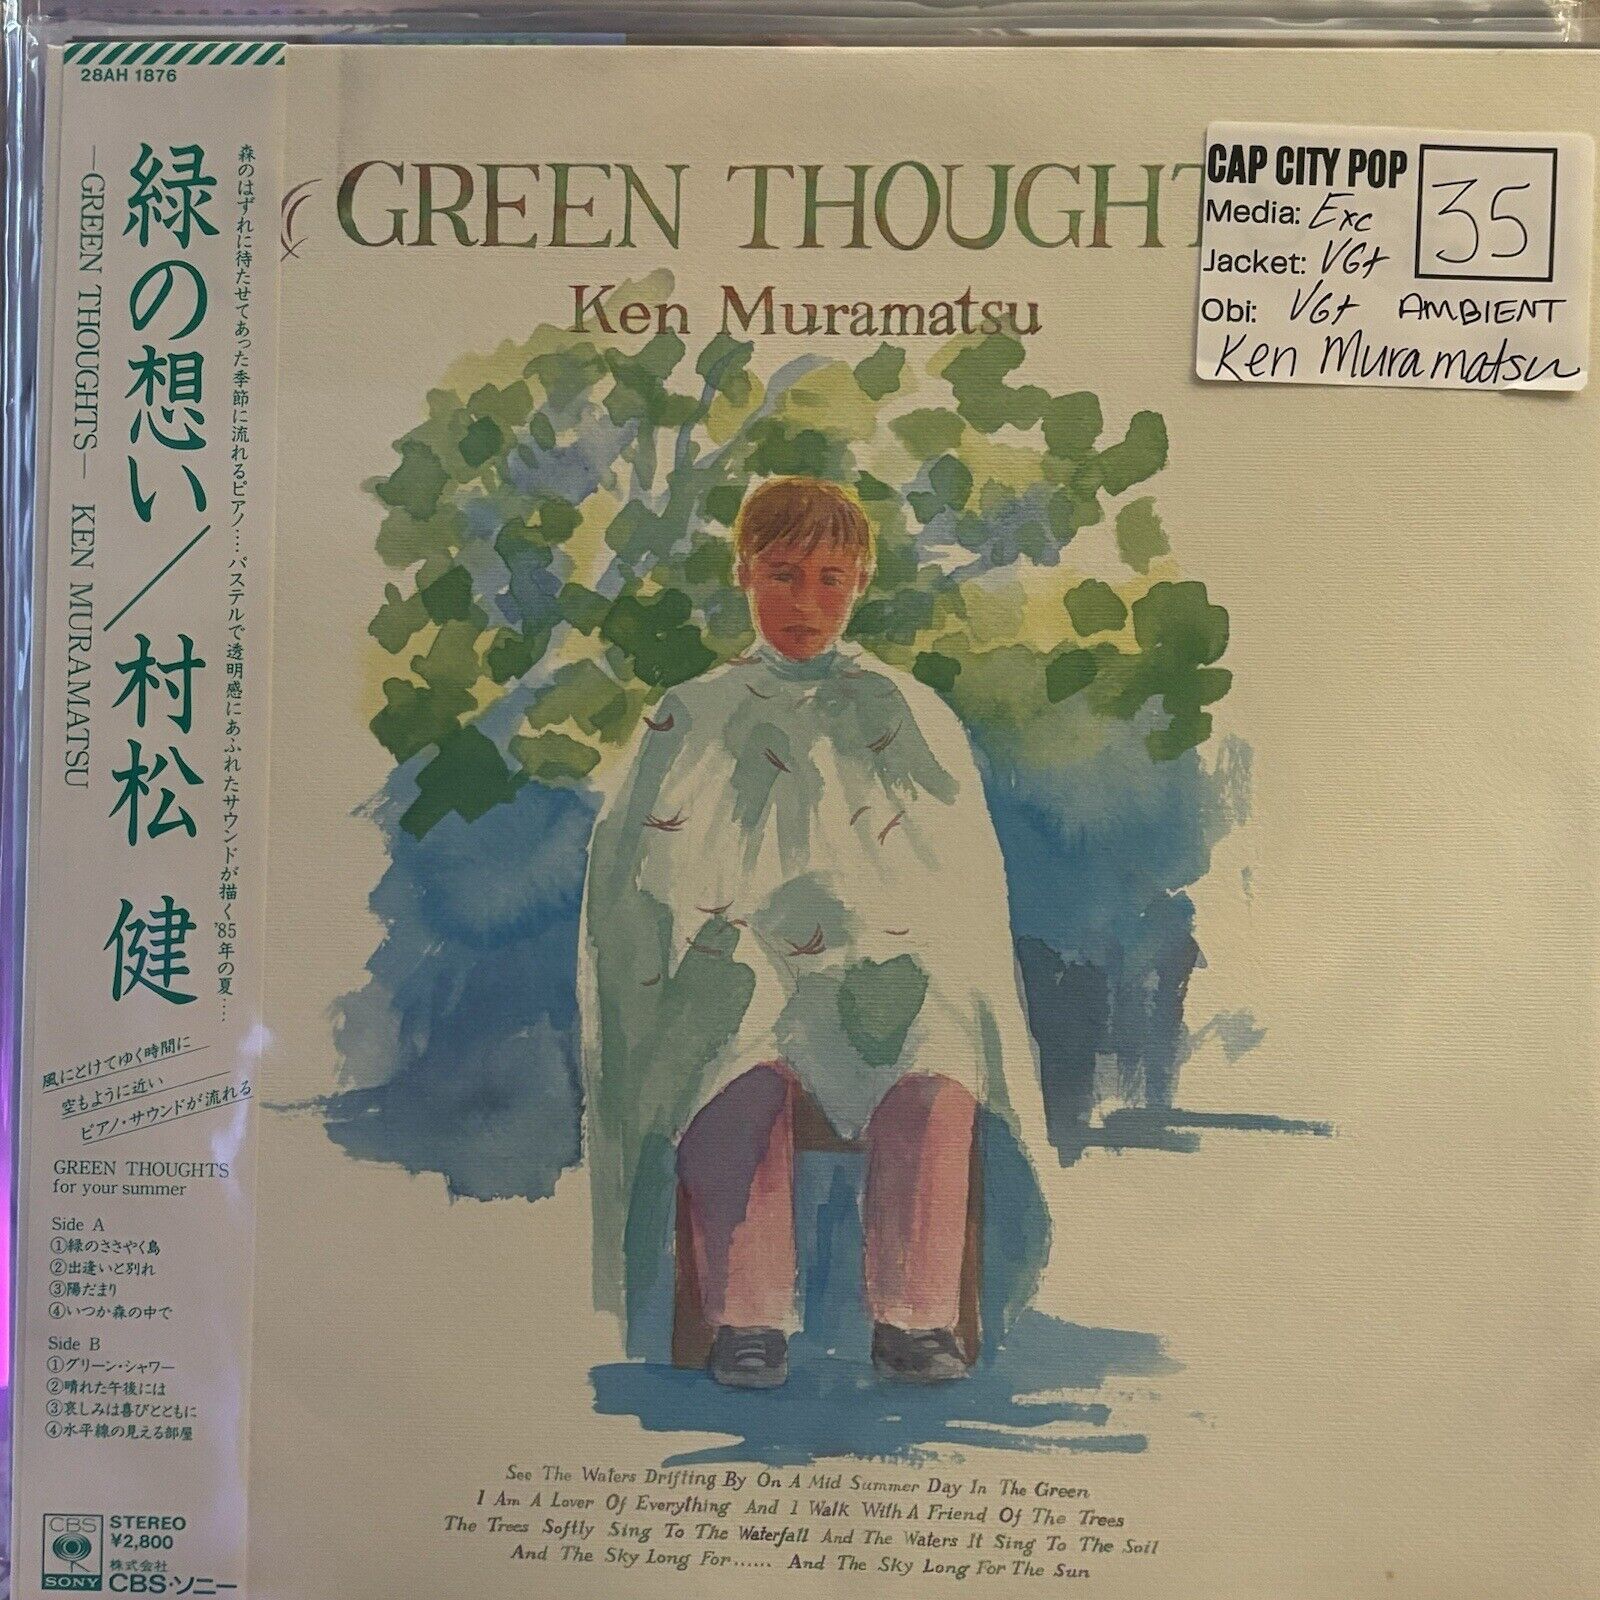 Ken Muramatsu - Green Thoughts LP, Album CBS/Sony 28AH 1876 1985 